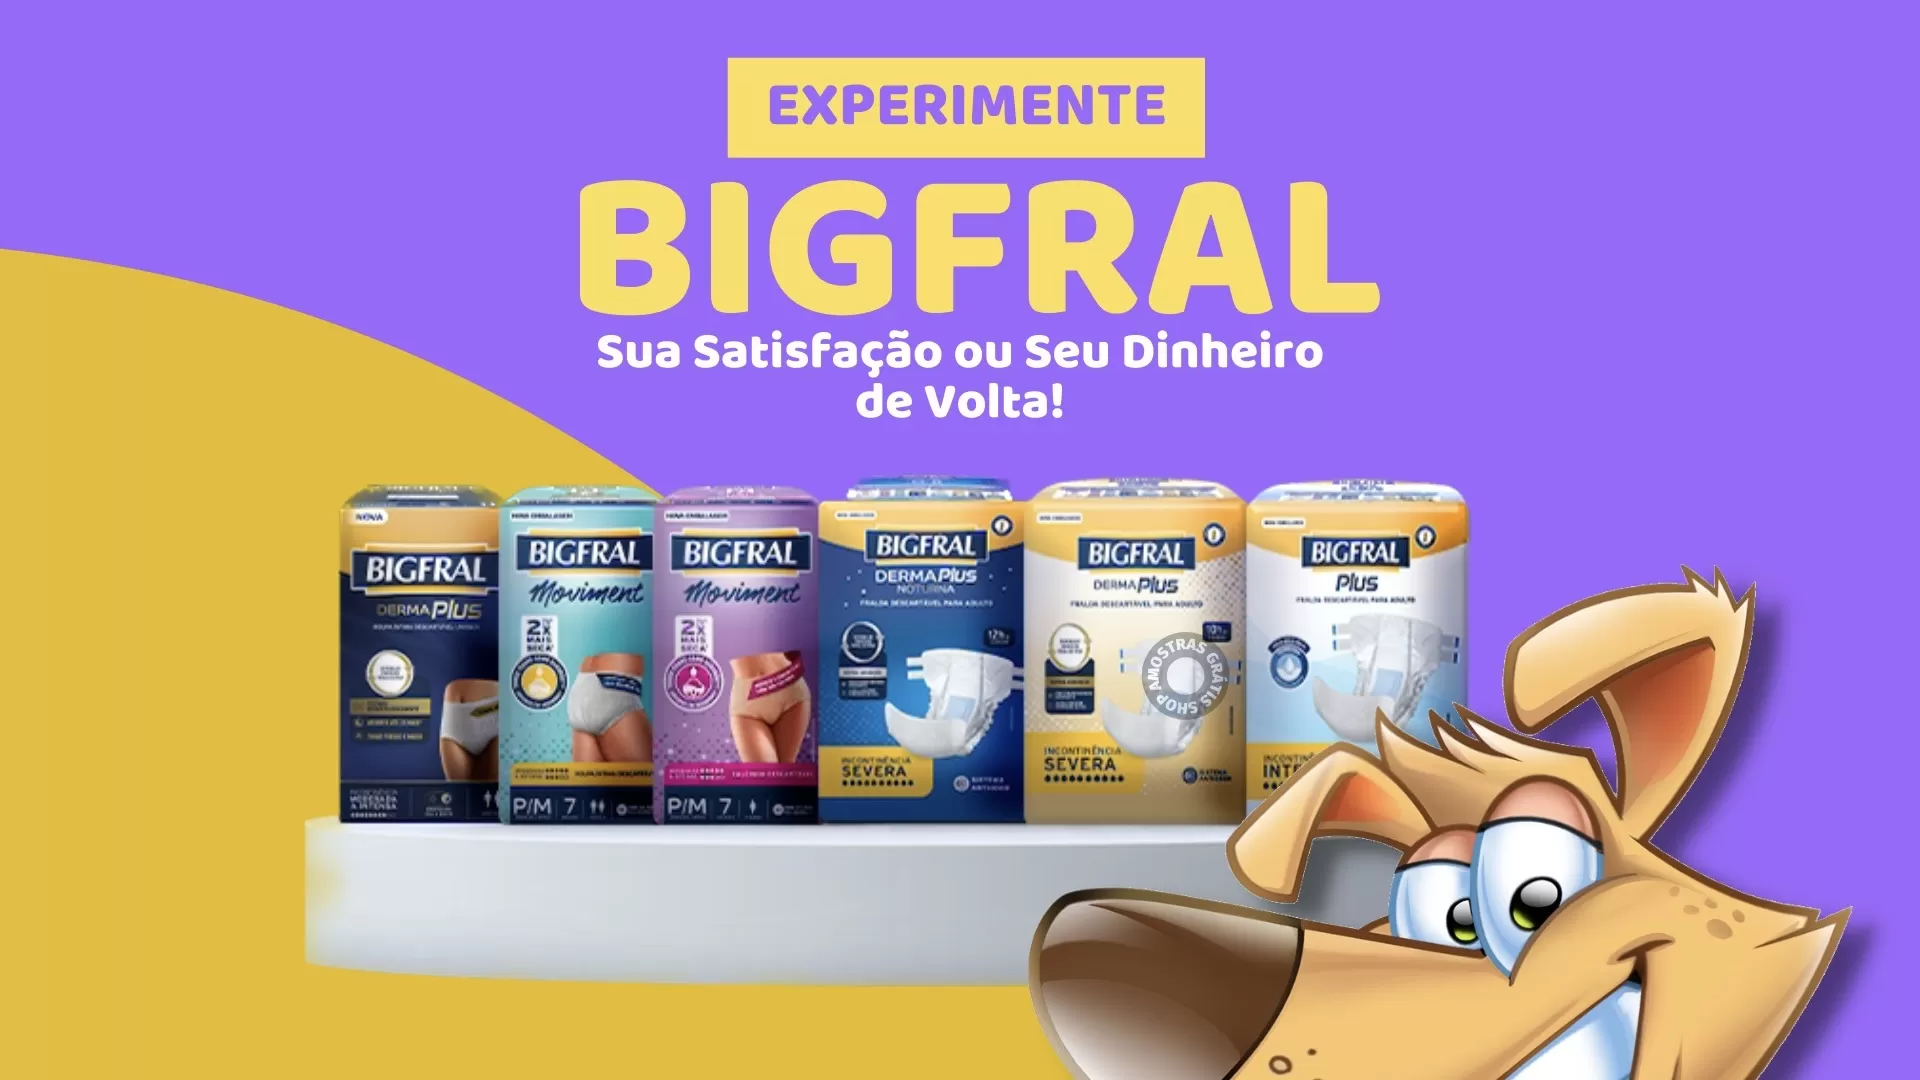 Bigfral campanha de satisfação garantida ou seu dinheiro de volta